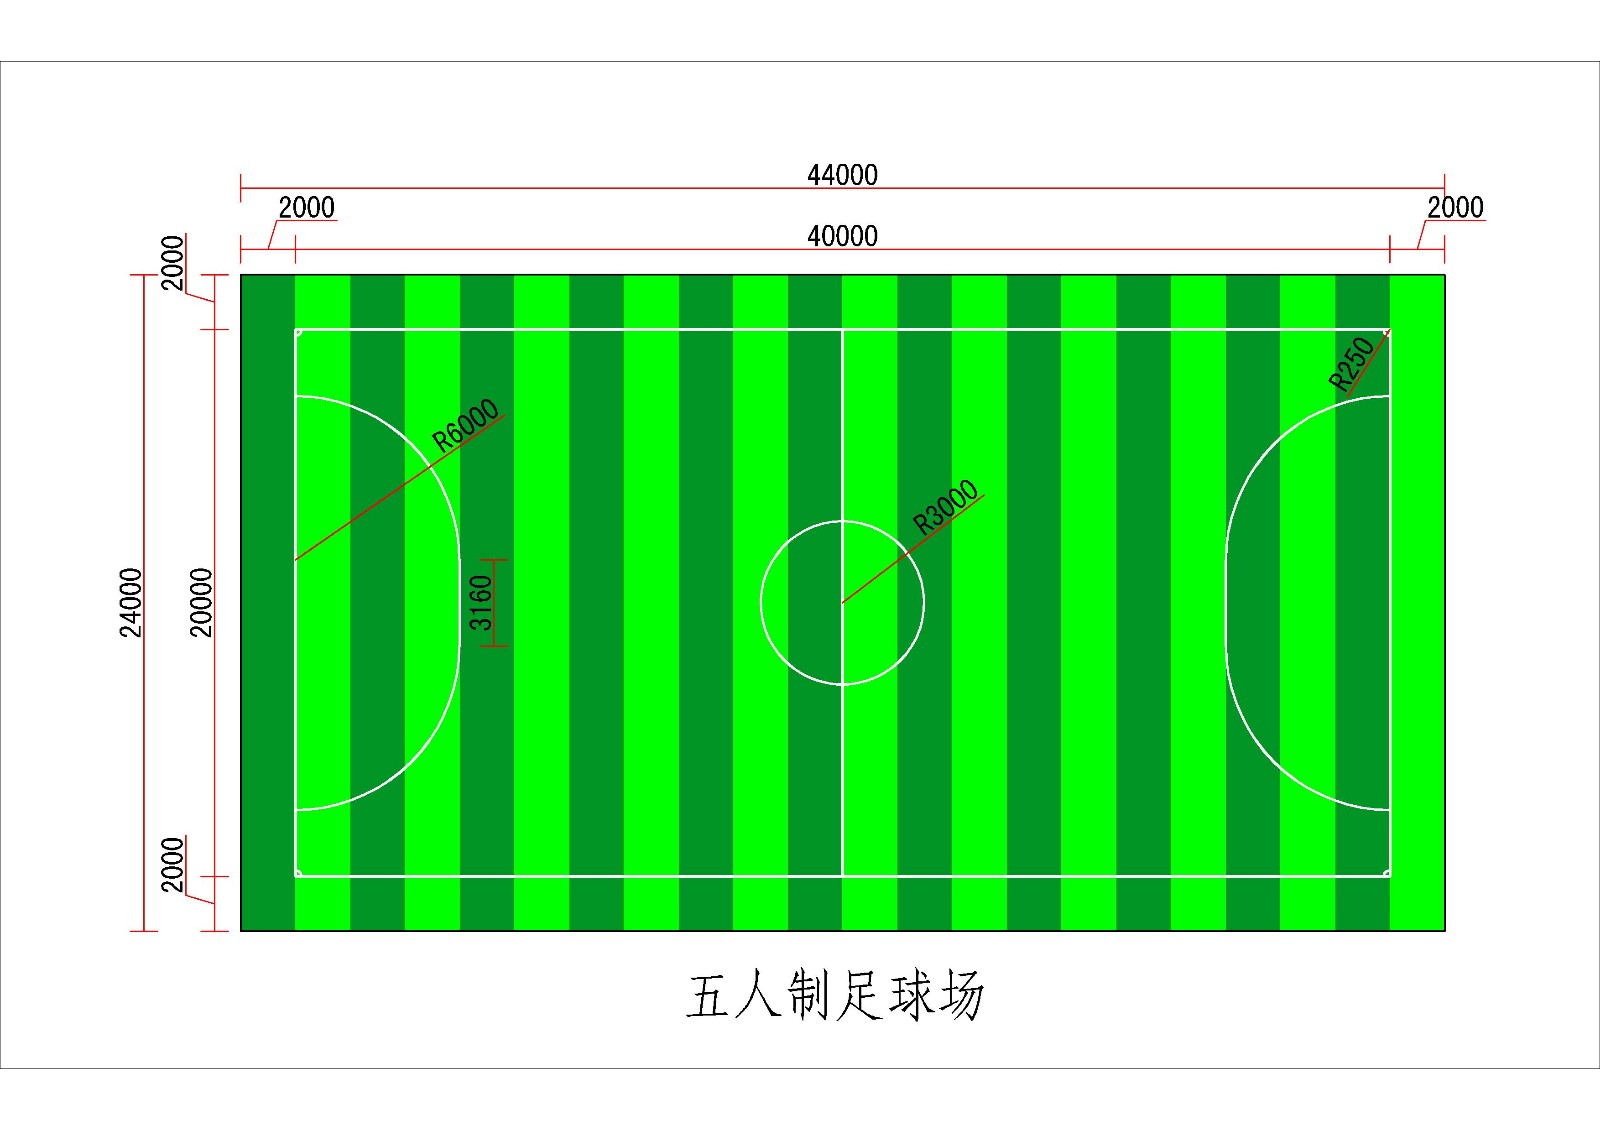 怎么画足球场的平面图!并标出比例尺?